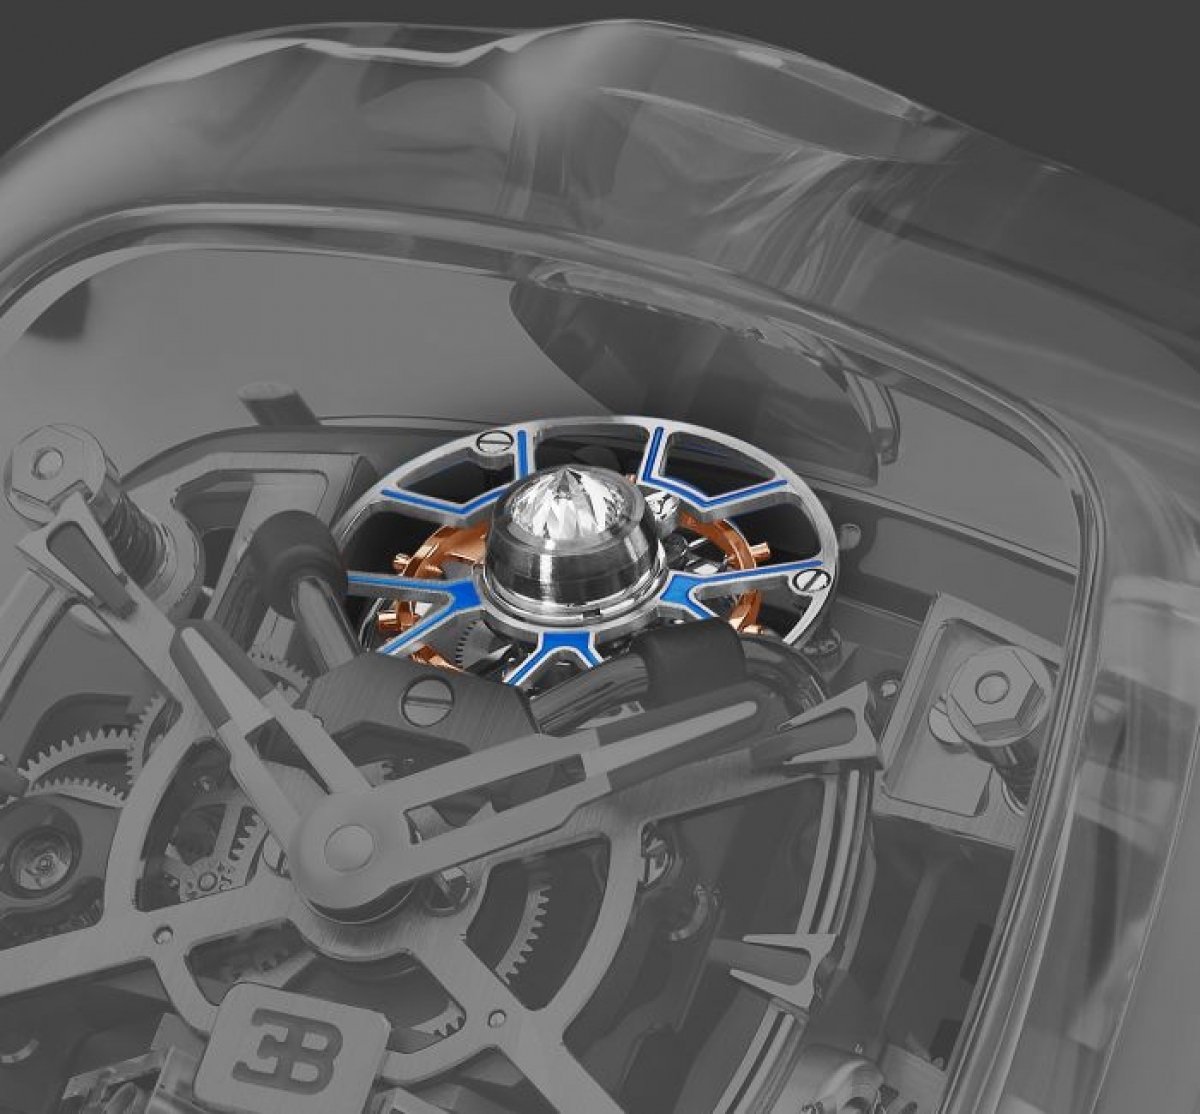 Chiêm ngưỡng mẫu đồng hồ giá 1,5 triệu USD của Bugatti và Jacob & Co - Ảnh 8.